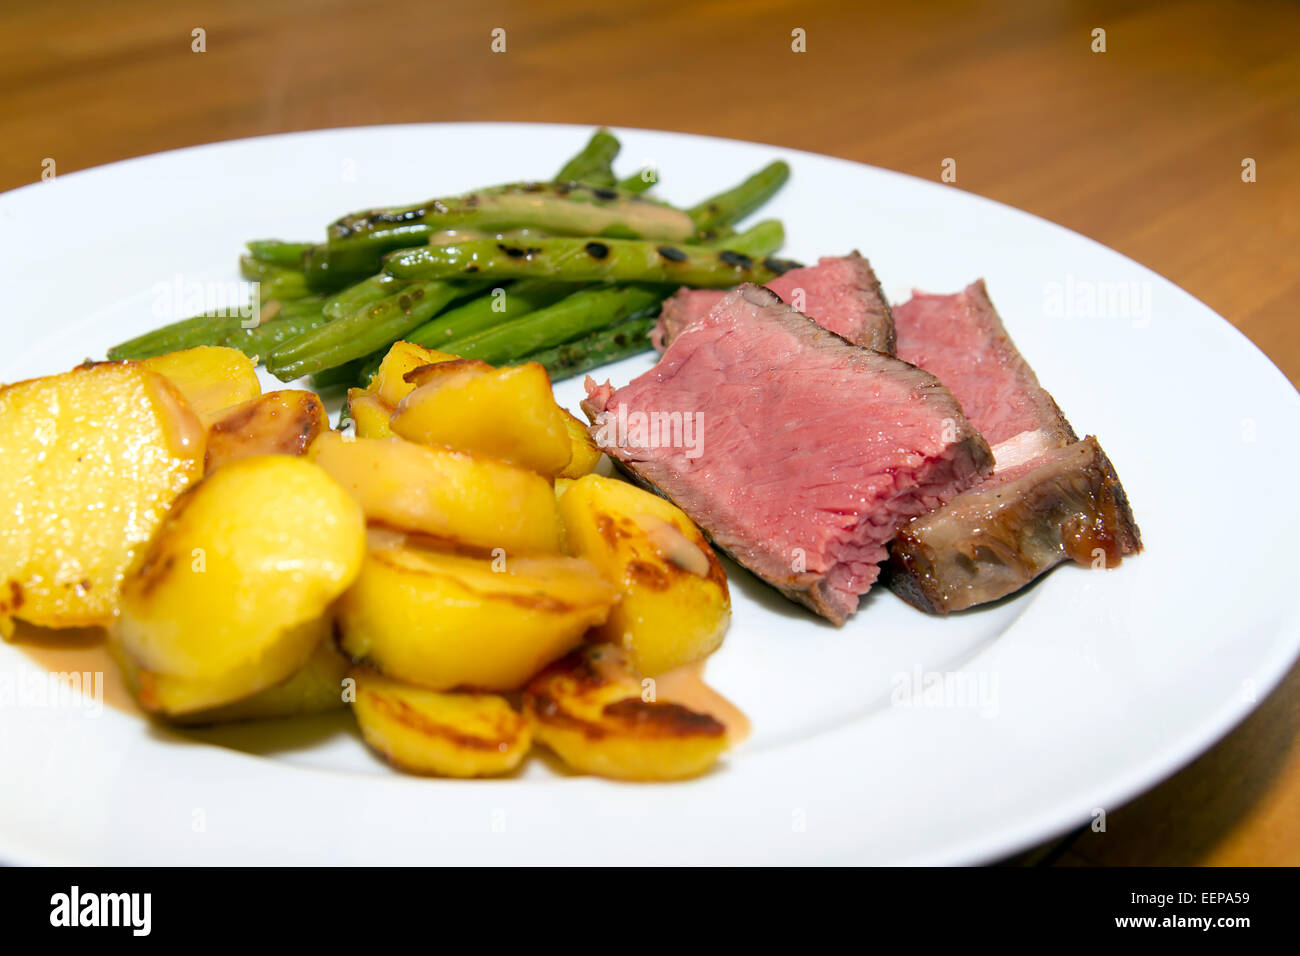 Roastbeef / Steak mit Bratkartoffeln und Bohnen Stockfotografie - Alamy